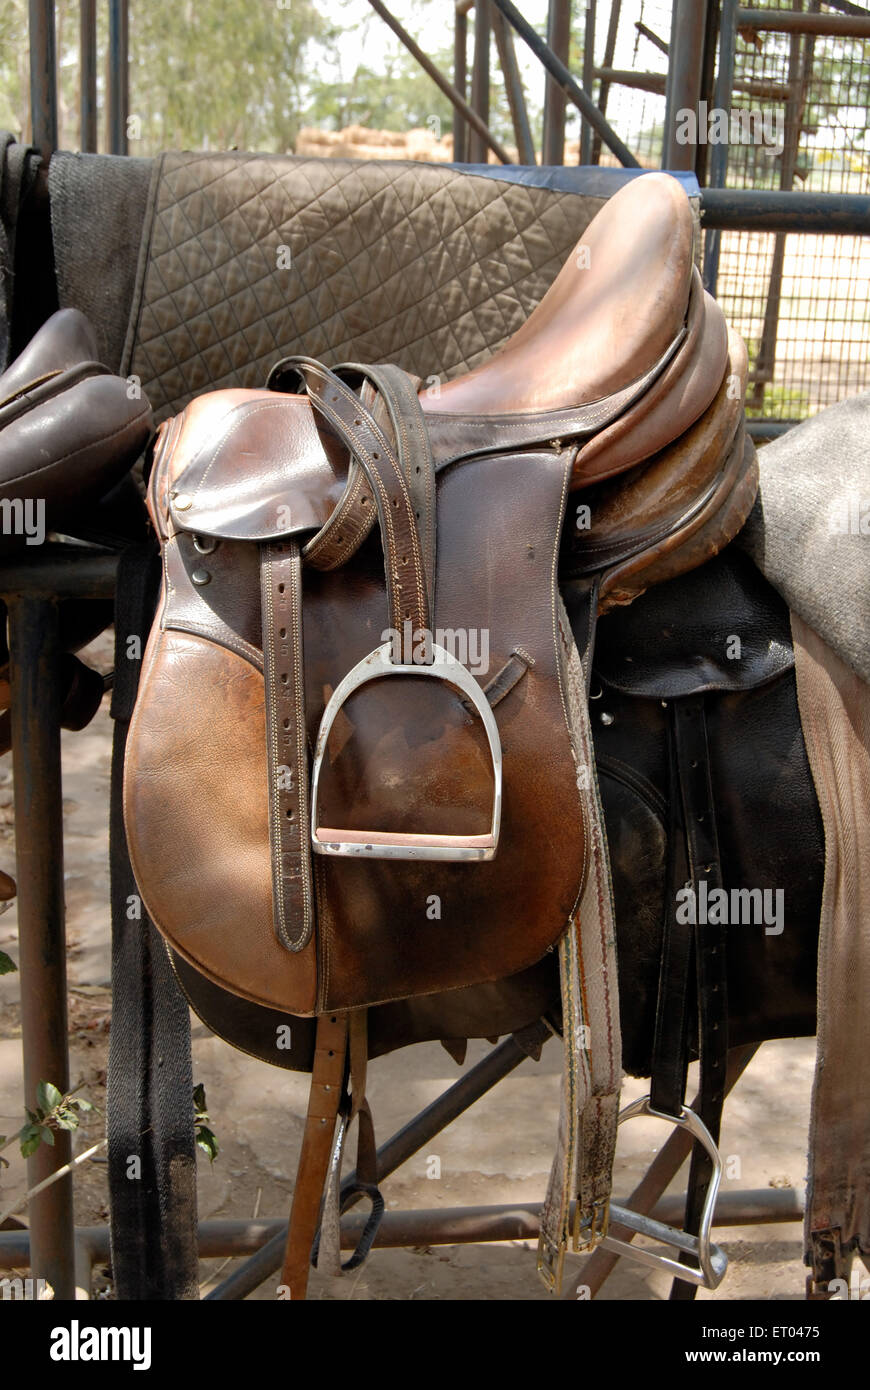 Saddle, Stirrup, stirrup leather, horse riding gear, Stock Photo